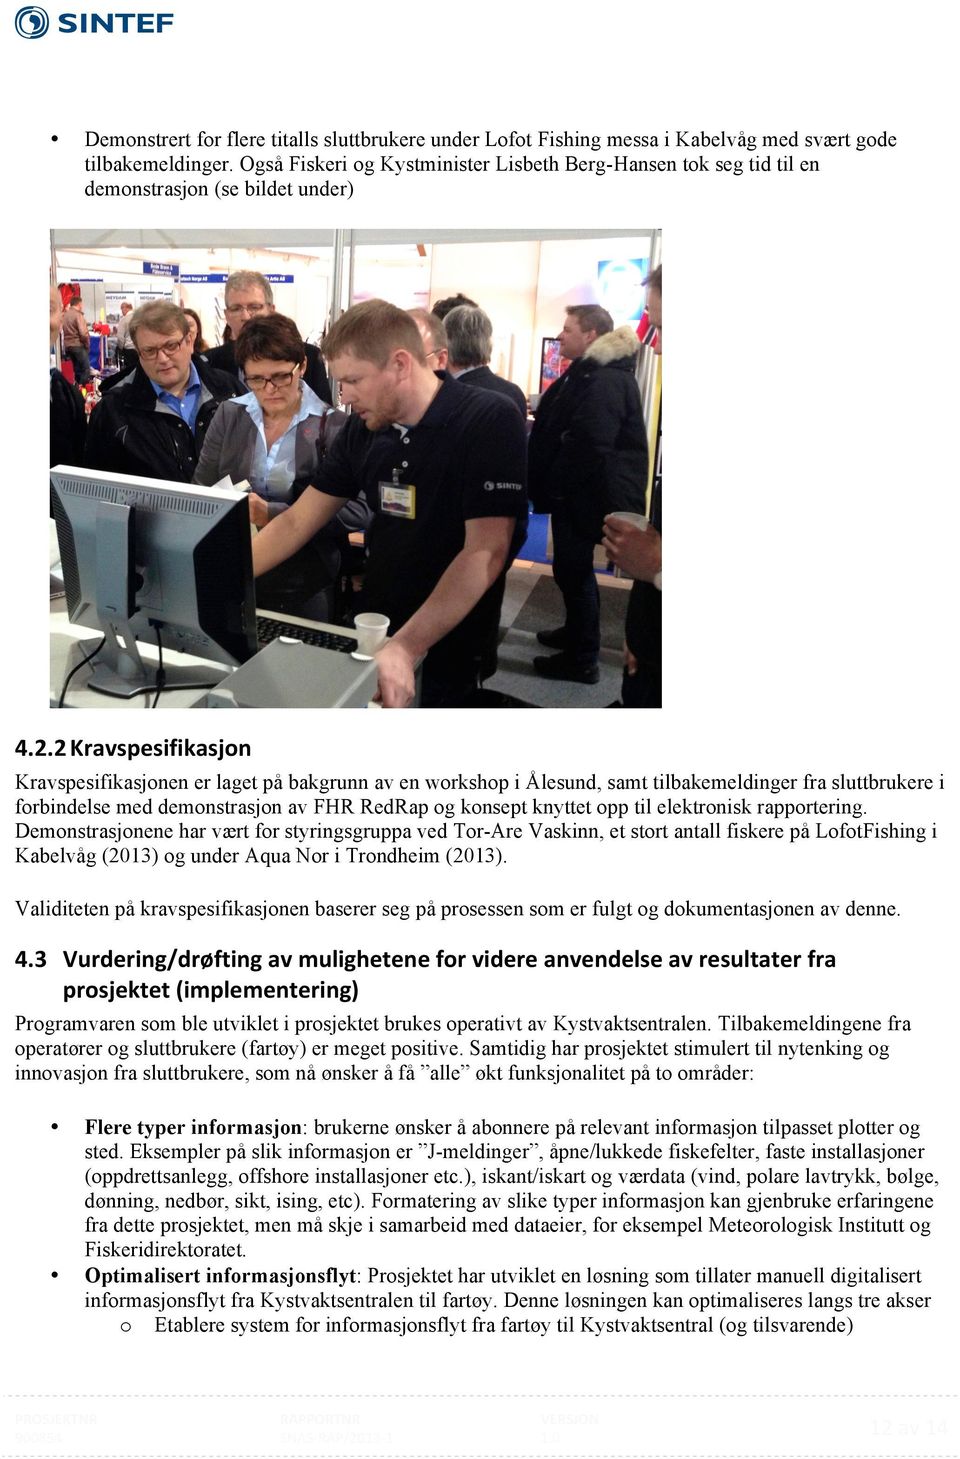 2 Kravspesifikasjon Kravspesifikasjonen er laget på bakgrunn av en workshop i Ålesund, samt tilbakemeldinger fra sluttbrukere i forbindelse med demonstrasjon av FHR RedRap og konsept knyttet opp til